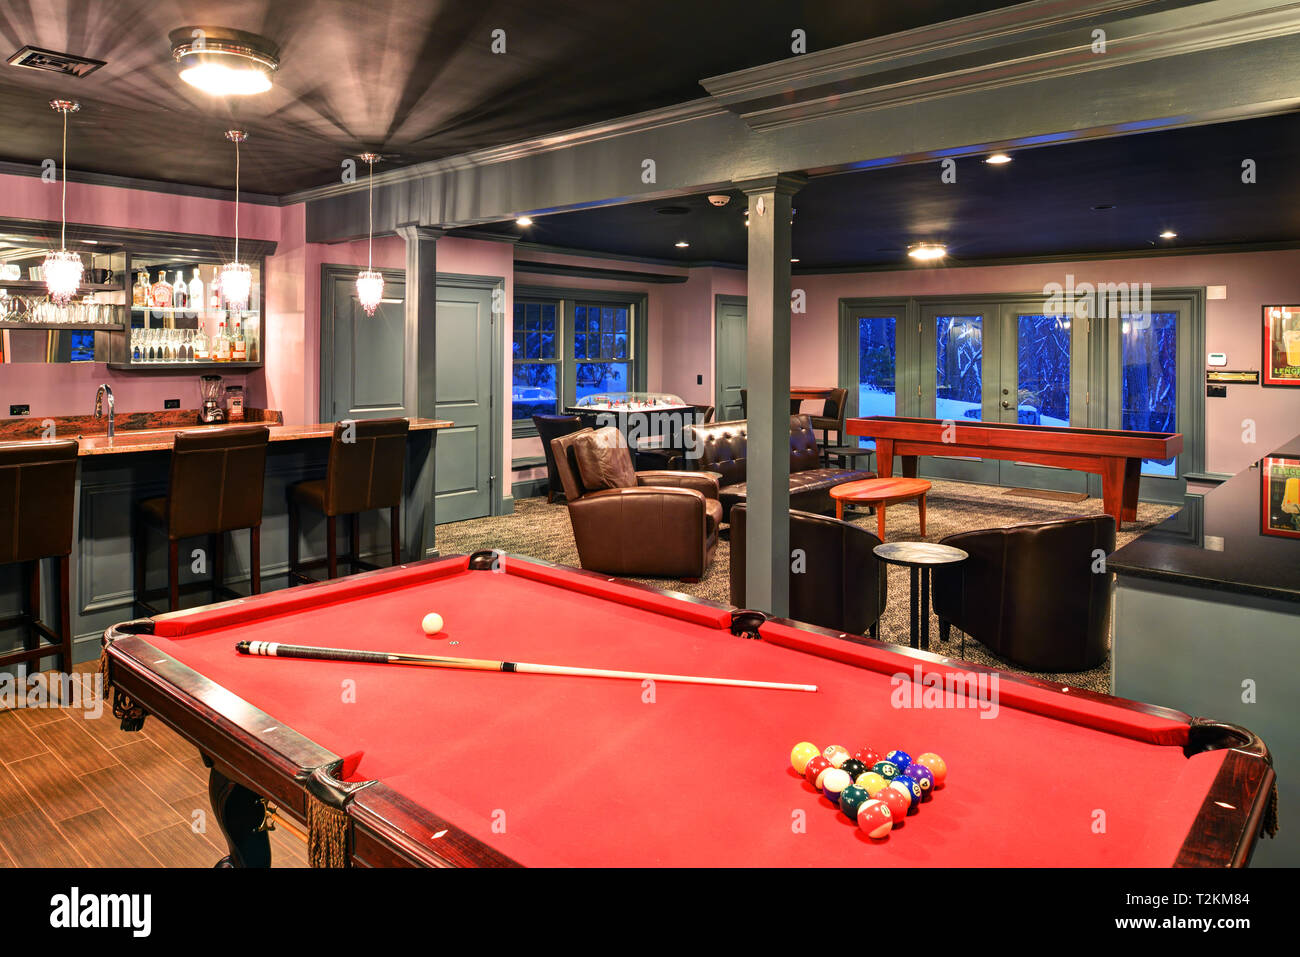 Aufenthaltsraum. Fertigen Keller mit Bar, Billardtisch und ein Spielzimmer.  Home Interior Design Stockfotografie - Alamy